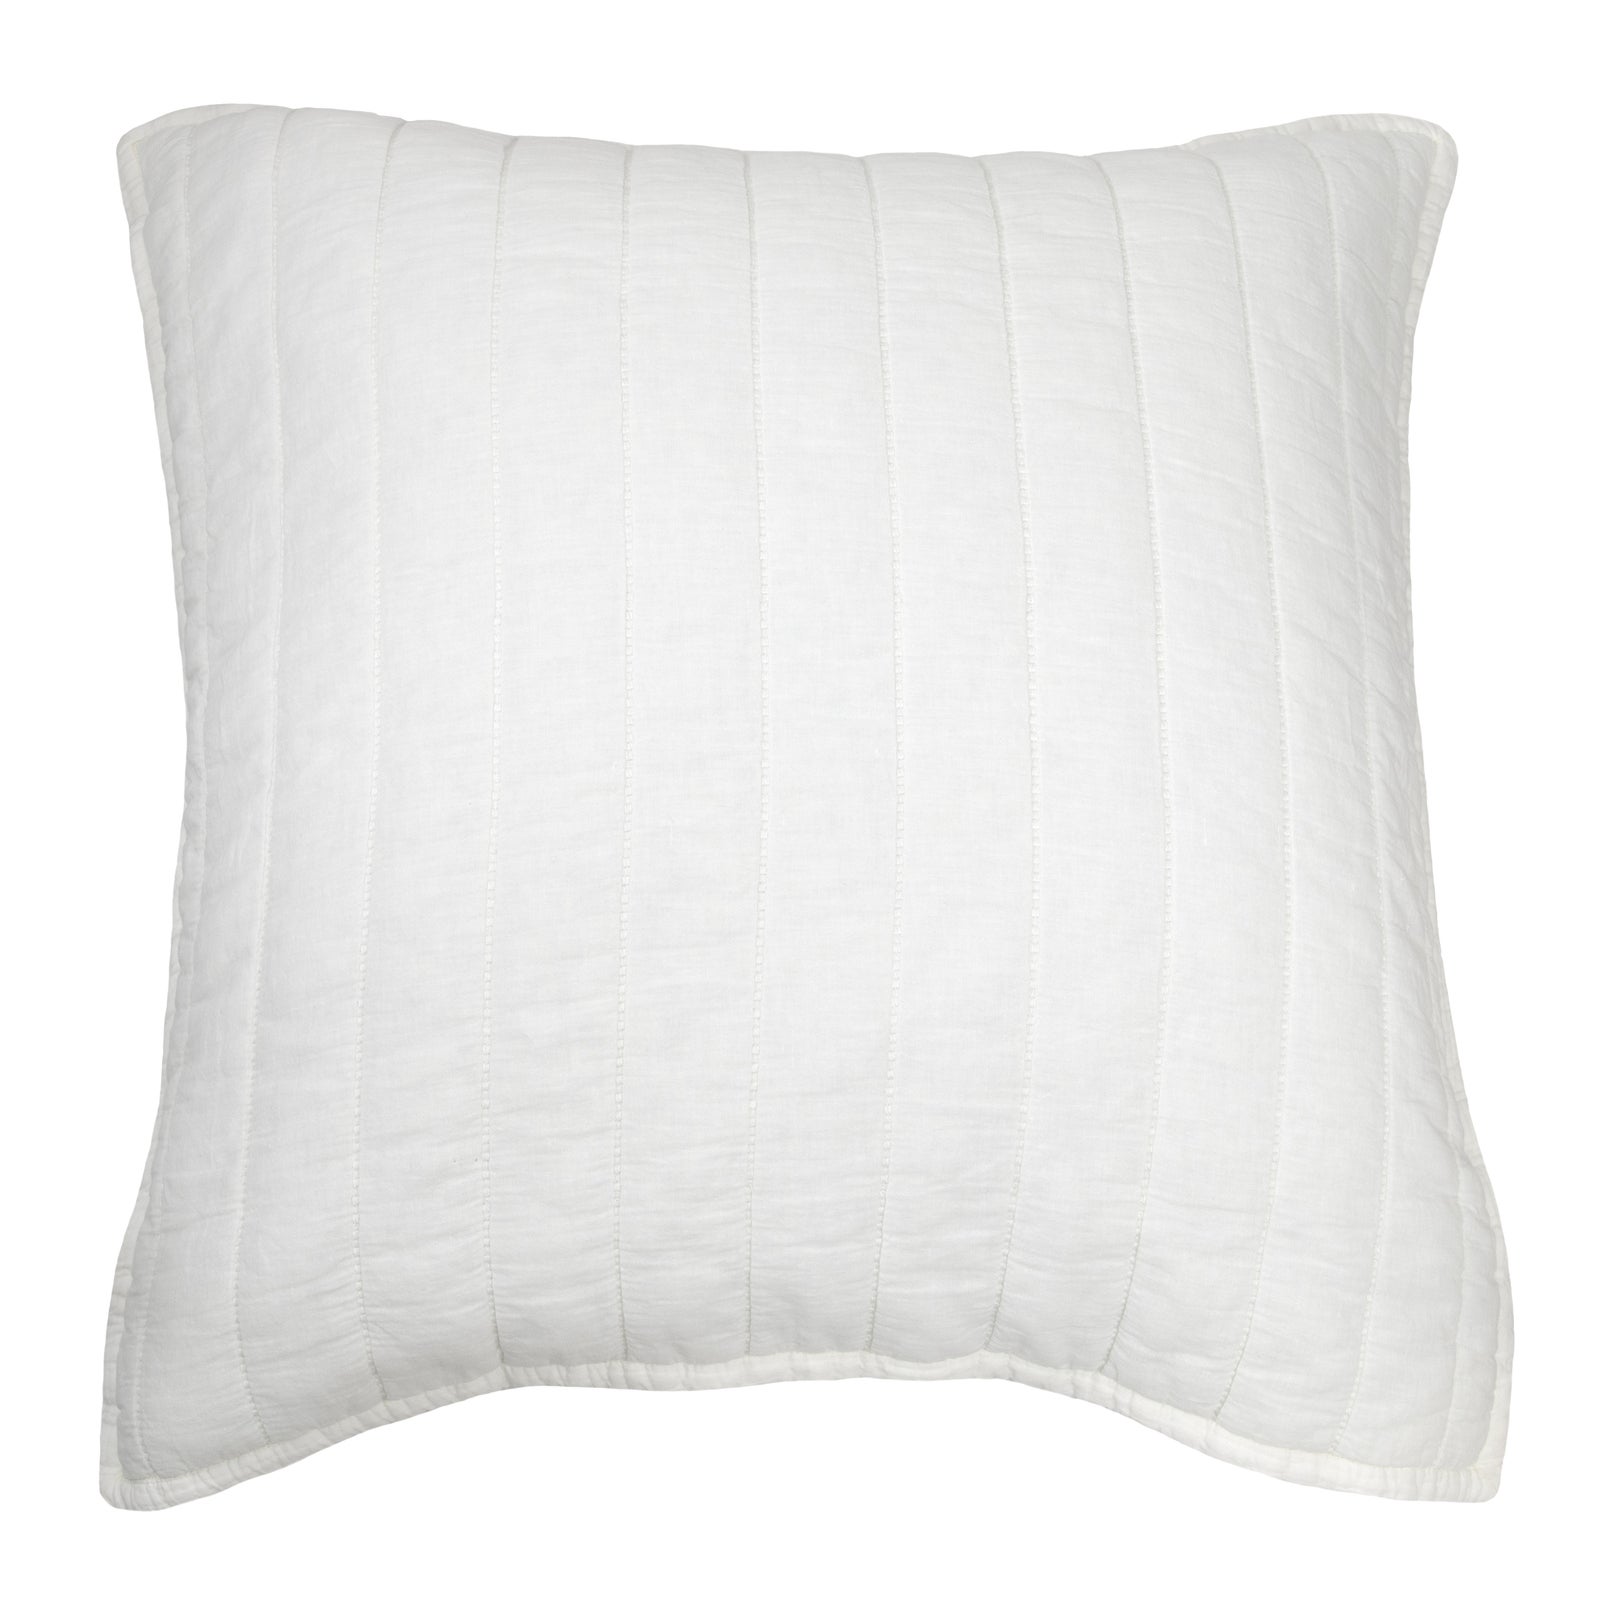 Ed Marmont Euro 66x66cm Cotton Pillowcase Pillow Cover Case Home Bedding White